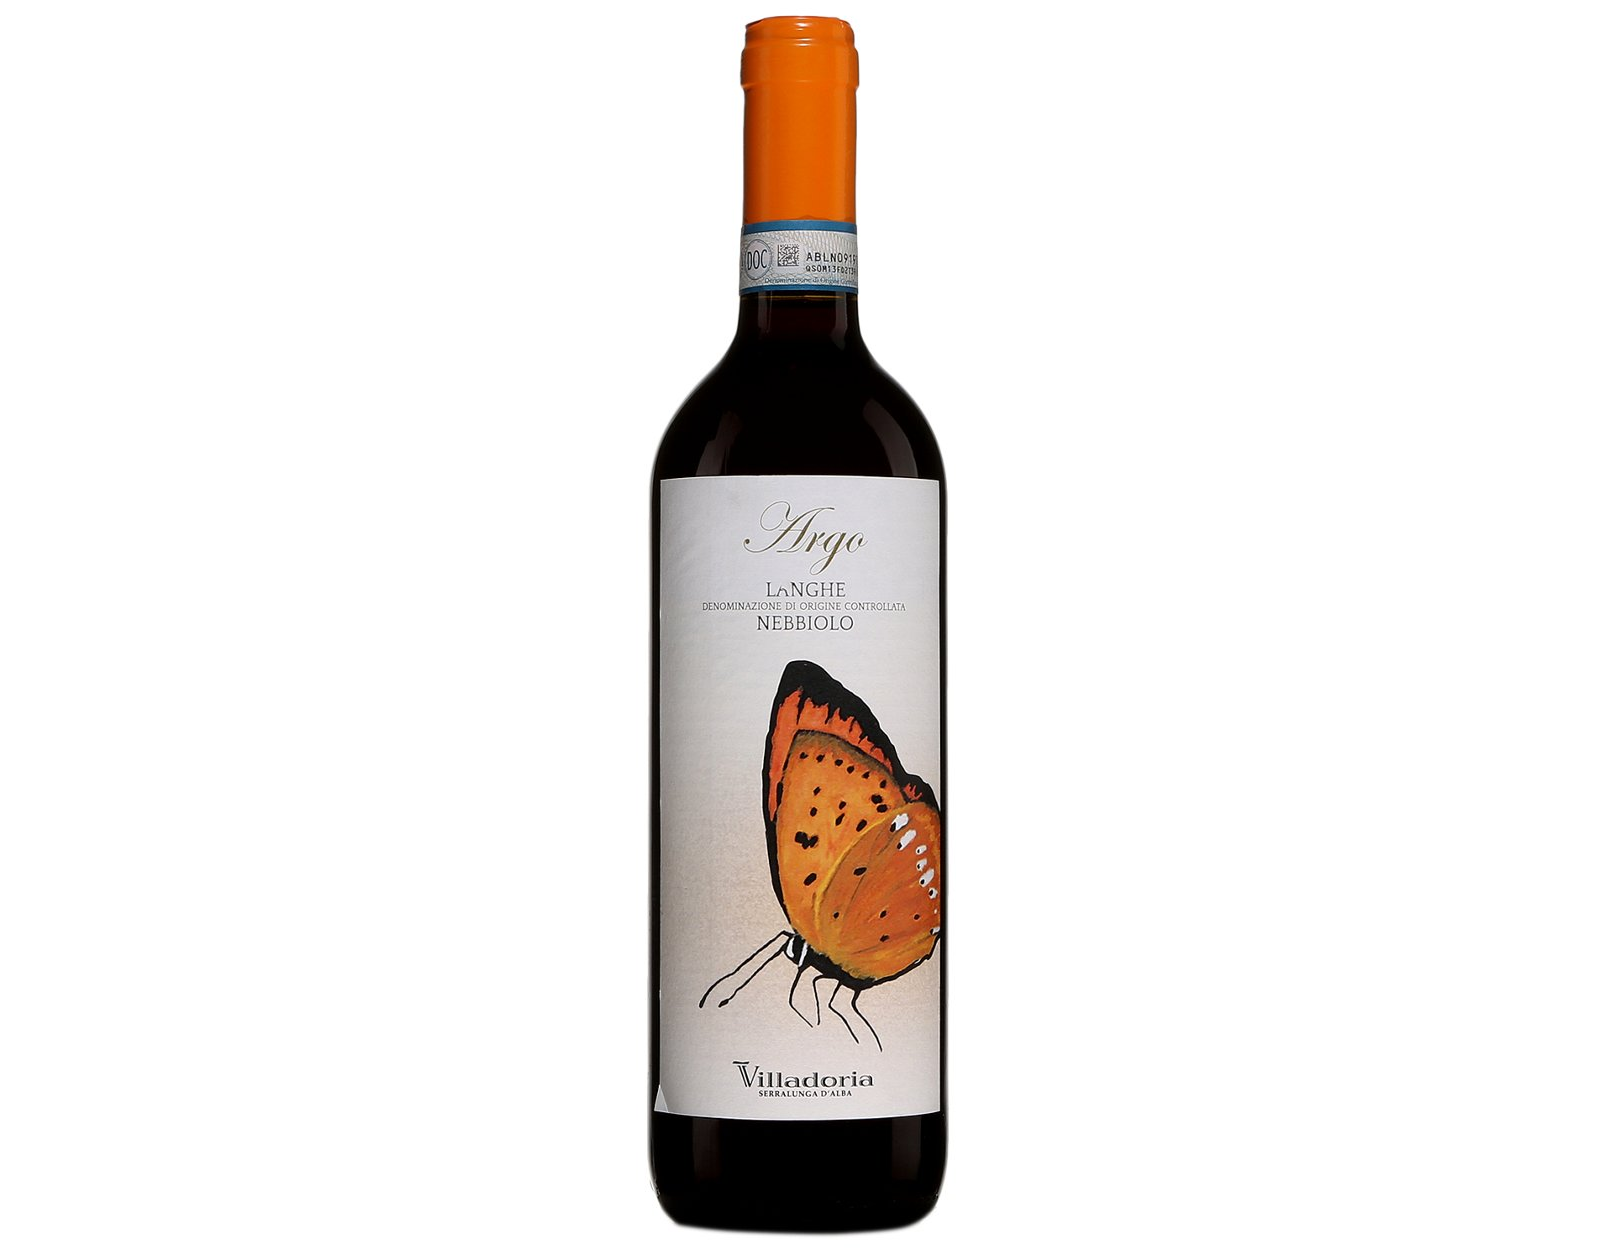 bouteille de vin rouge Villadoria Argo Langhe Nebbiolo 2017